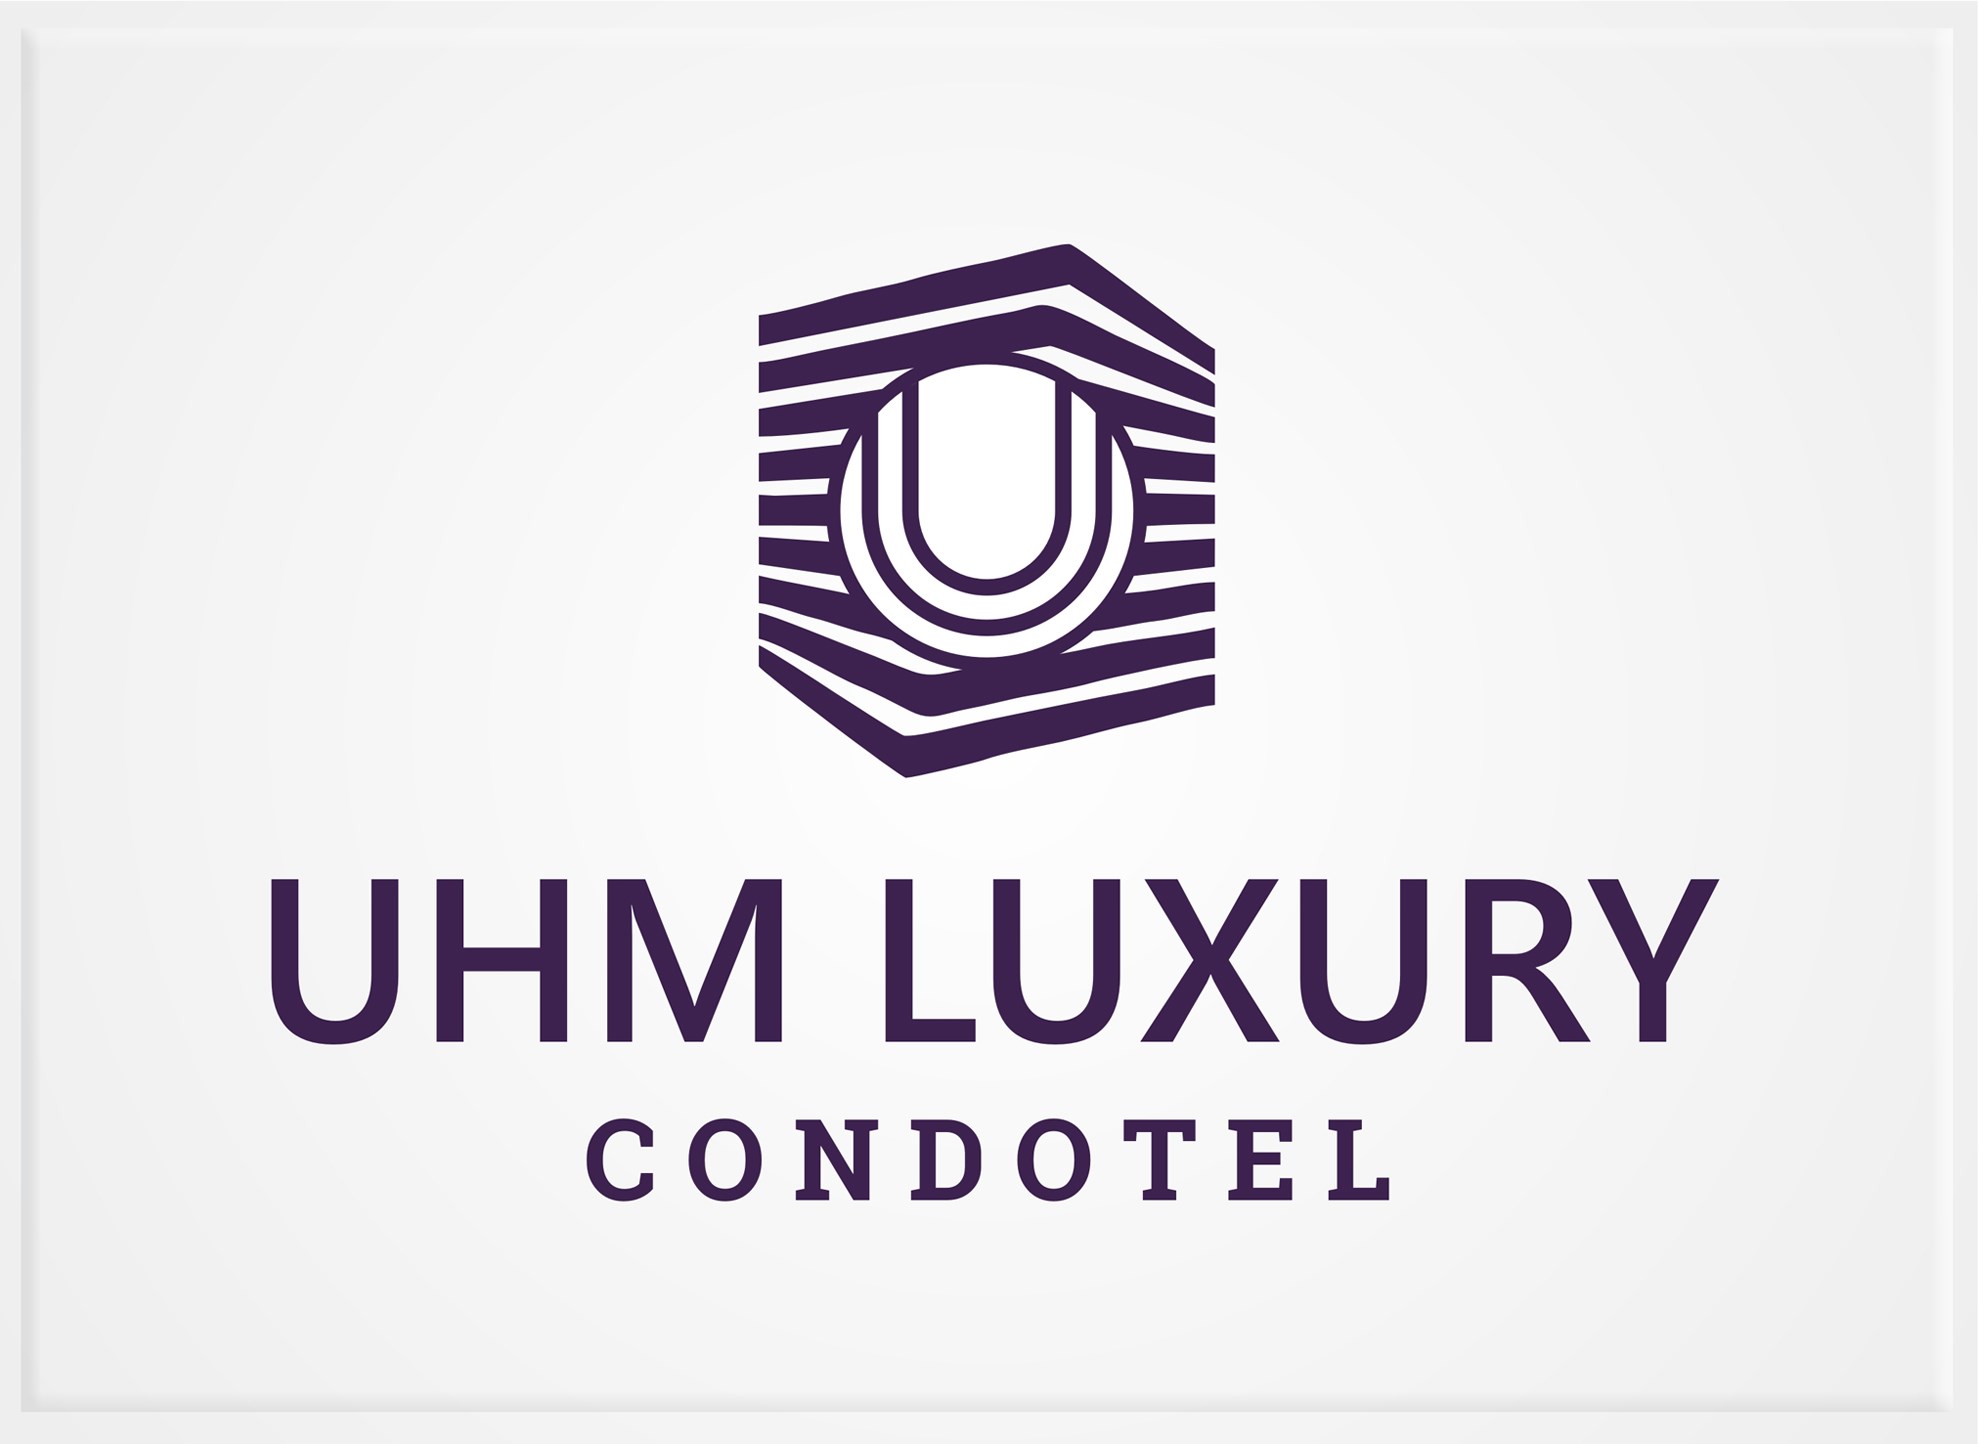 UHM Luxury condotel